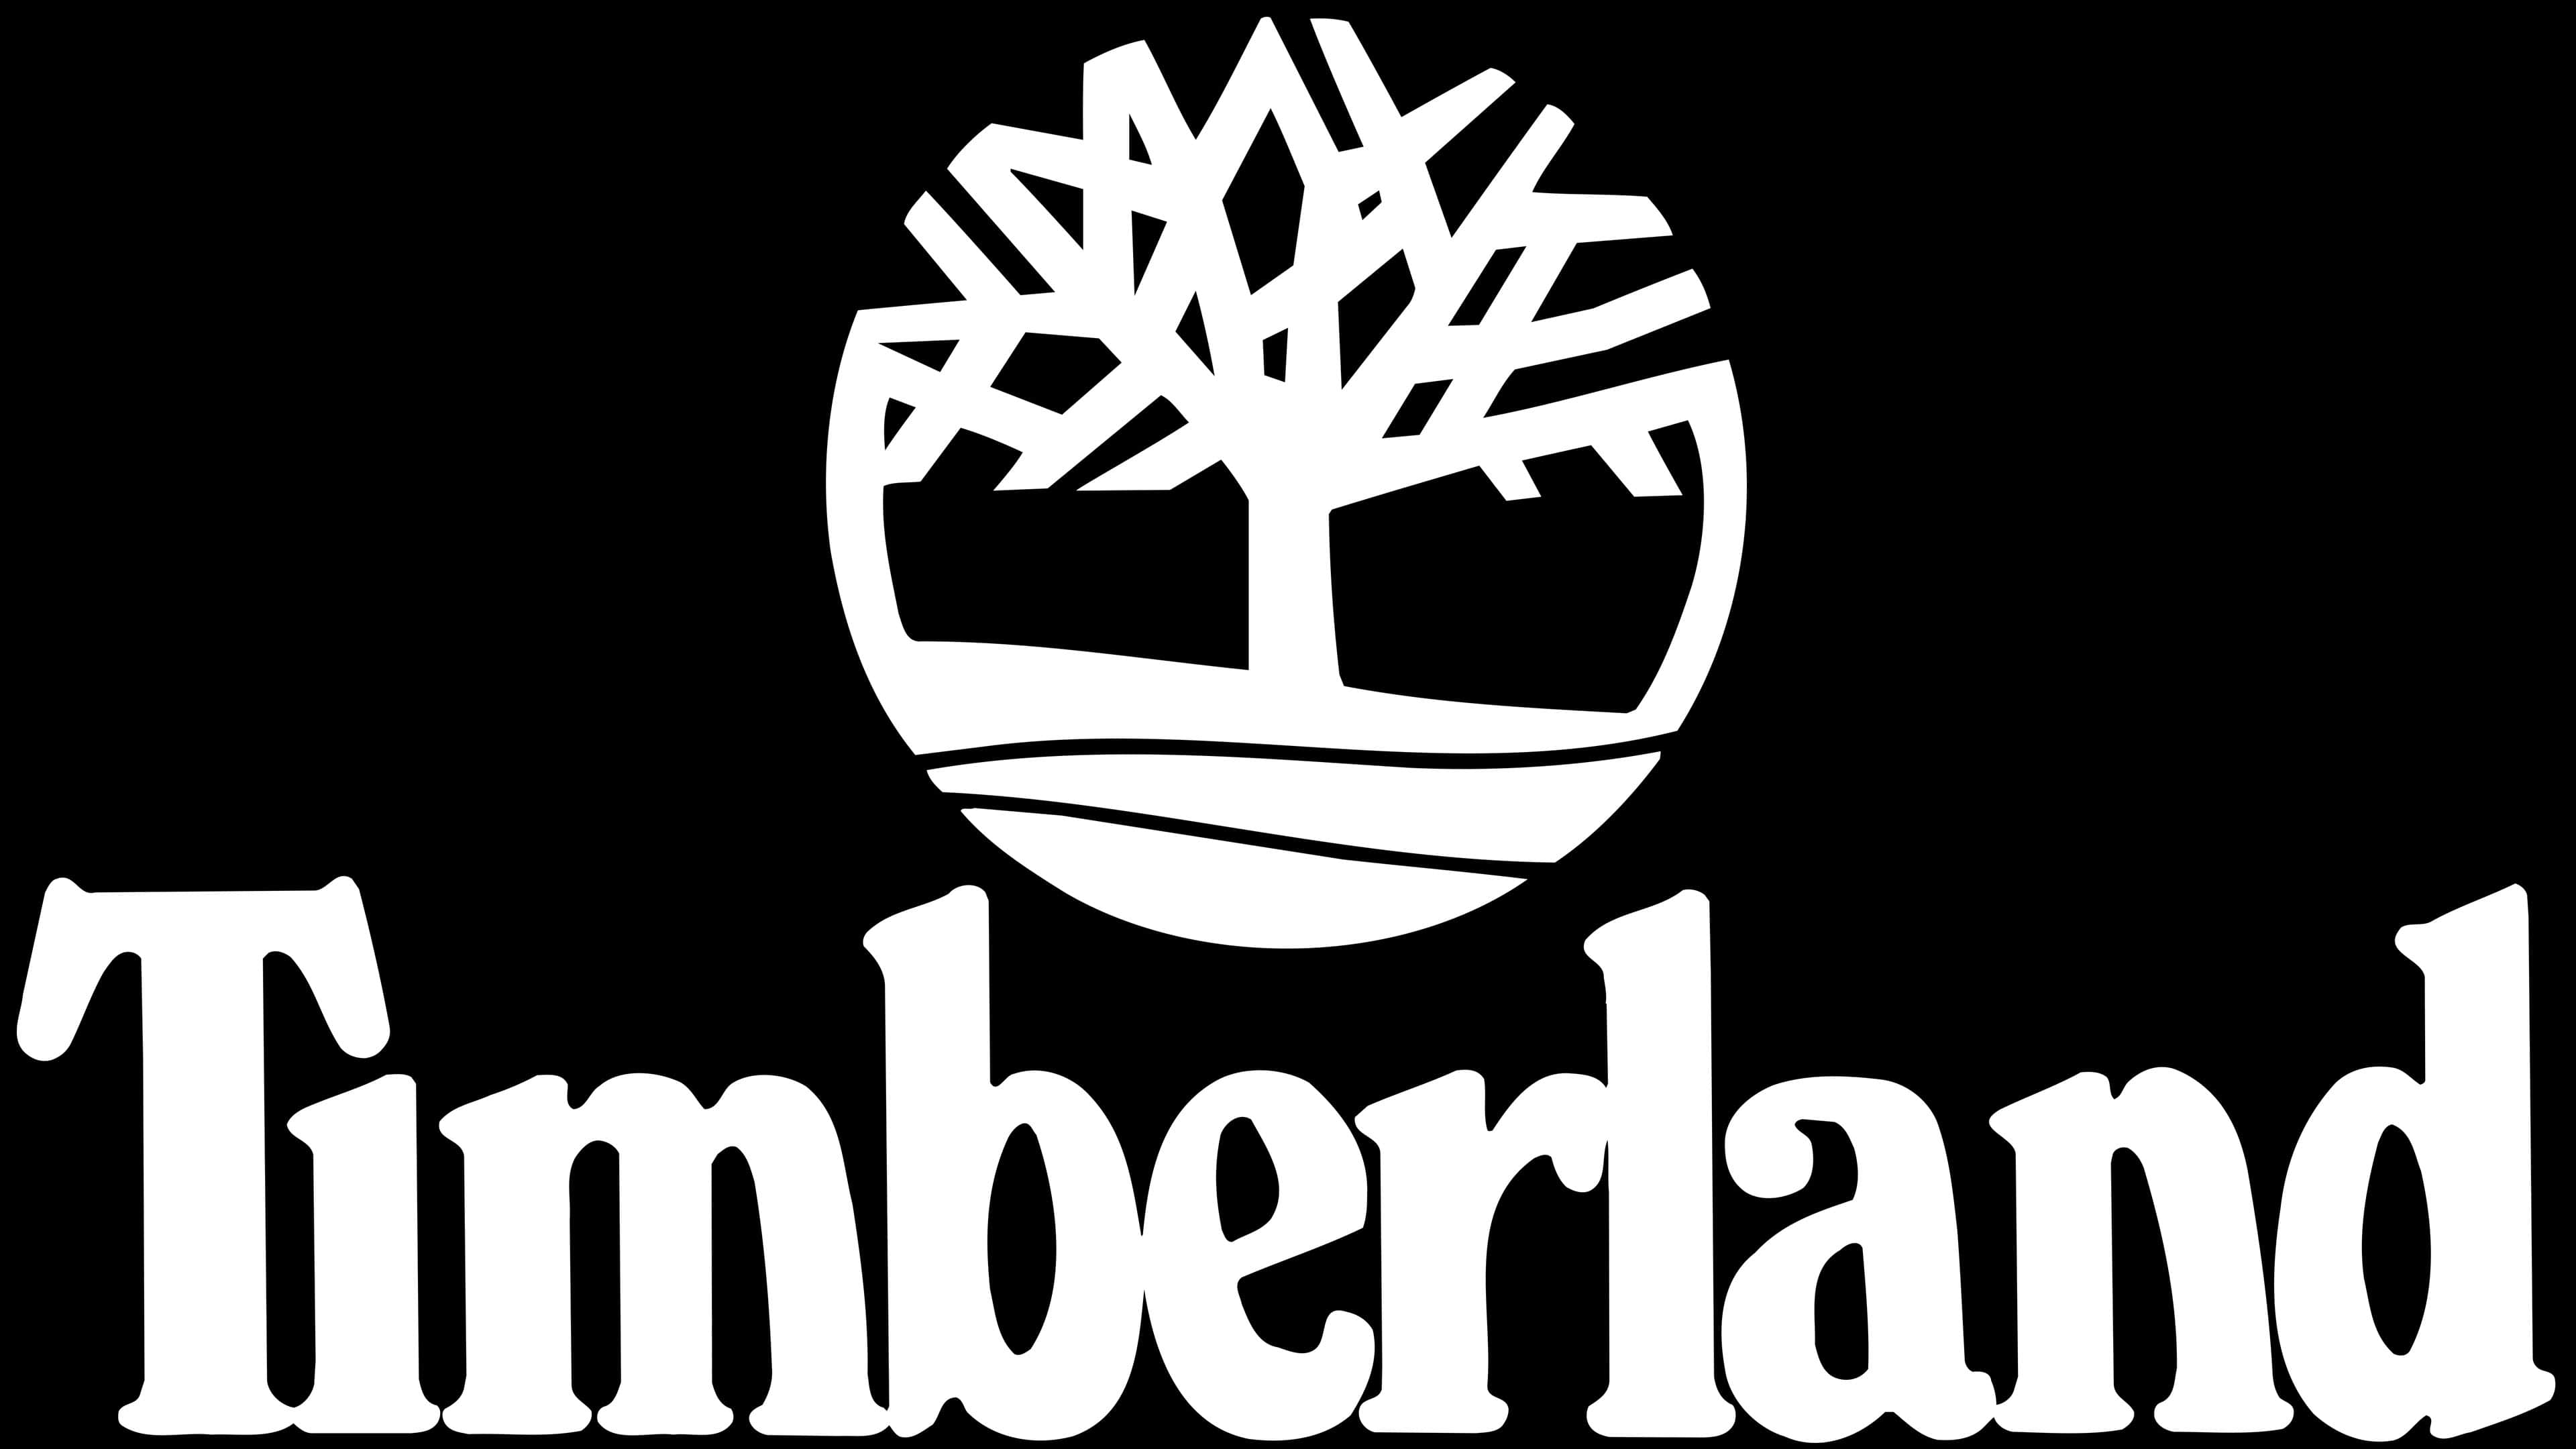 Timberland Logo y símbolo, significado, historia, PNG, marca